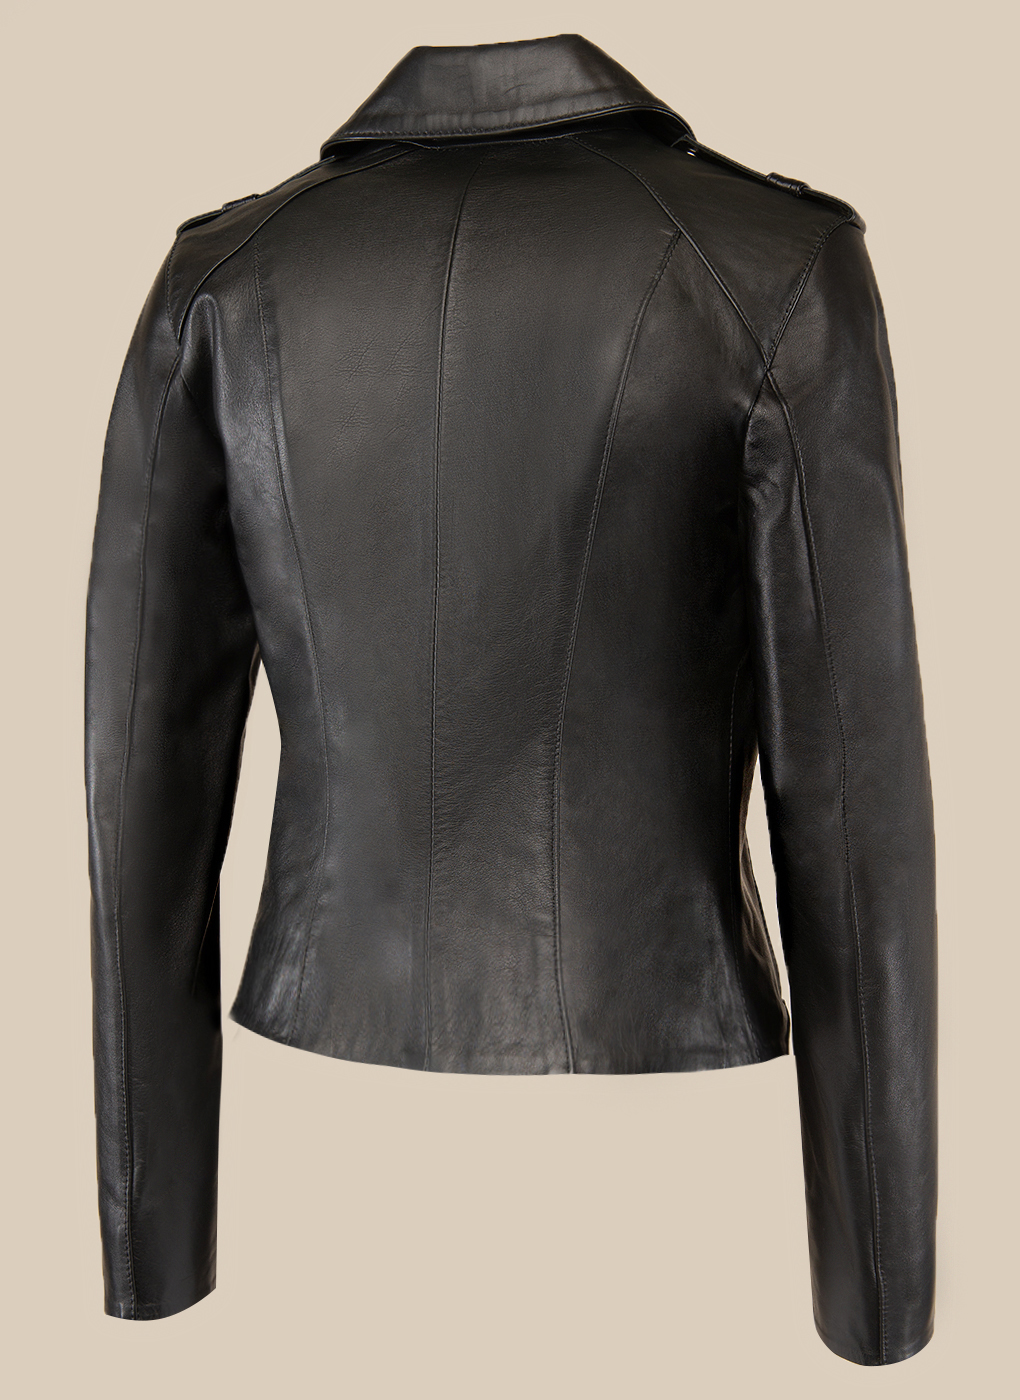 Кожаная куртка женская Каляев 47111 черная 48 RU